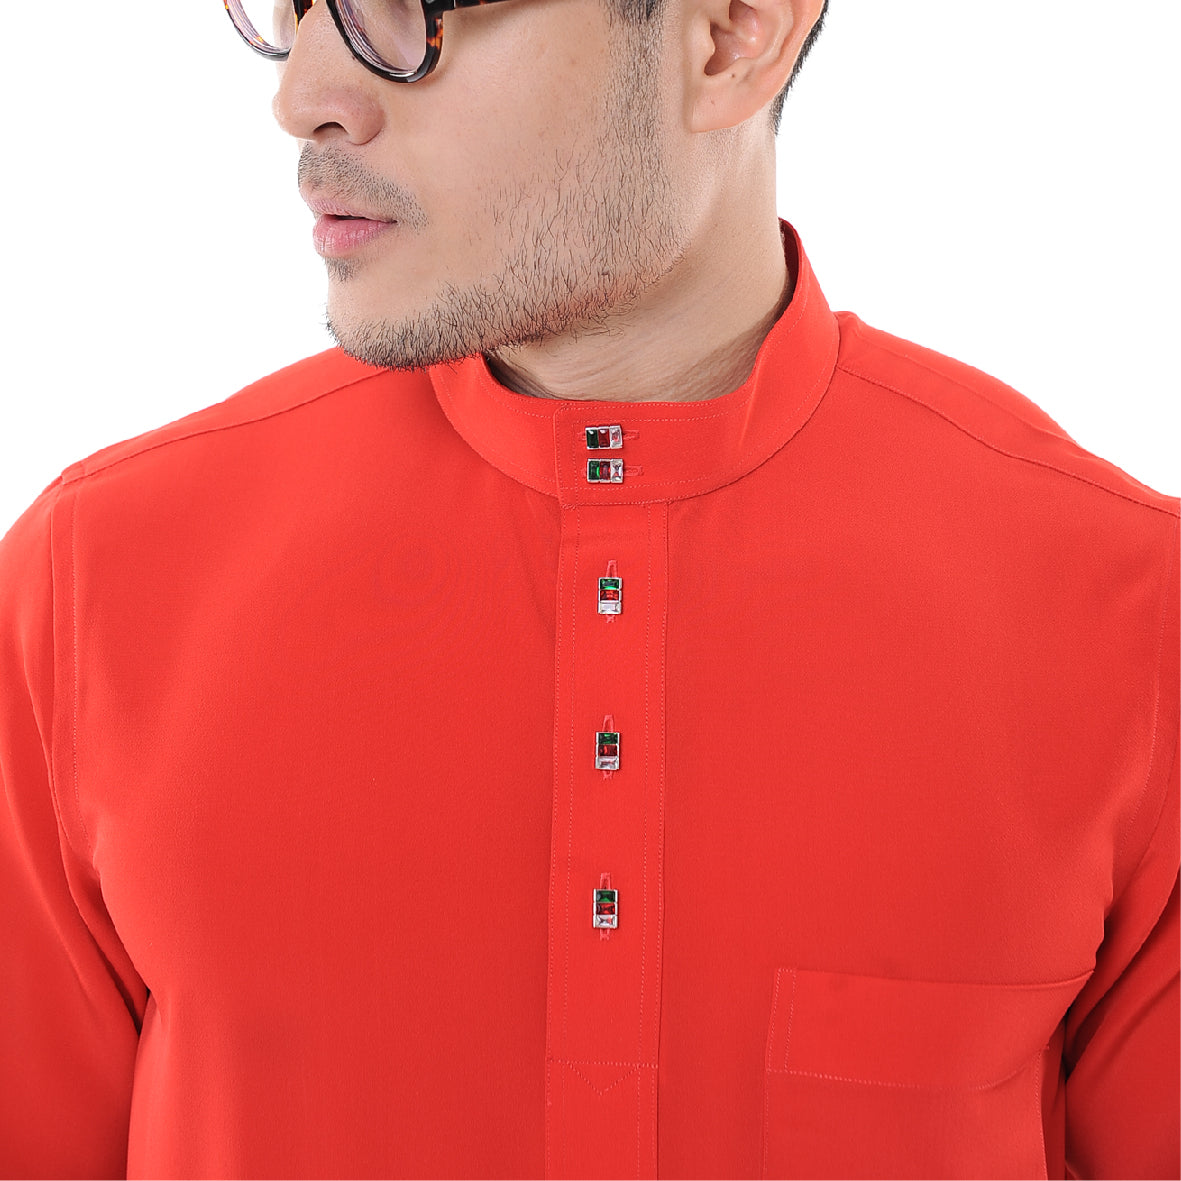 Baju Melayu Japanese Crepe Cekak Musang Red